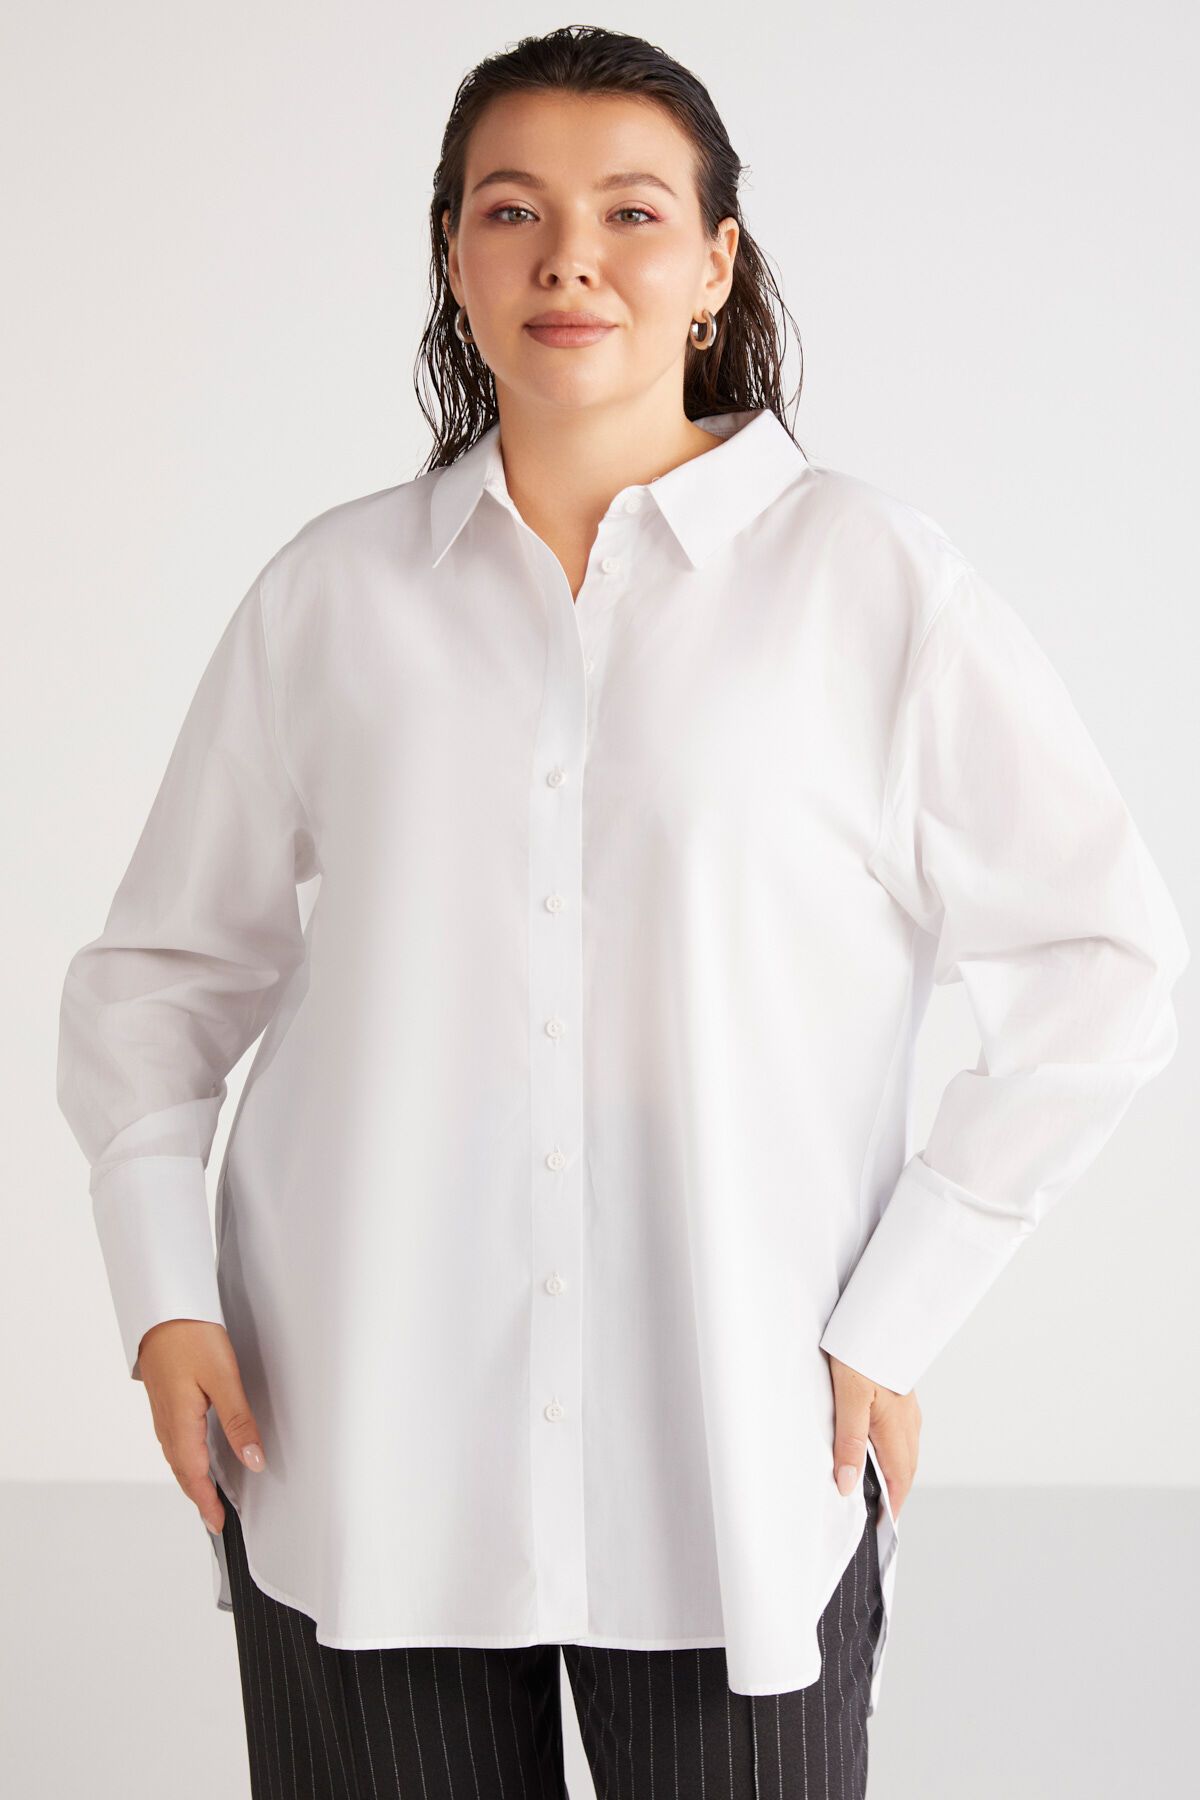 ETHIQUET Amarabb Kadın 100% Pamuk Poplin Manşetli Geniş Kesim Beyaz Büyük Beden Gömlek